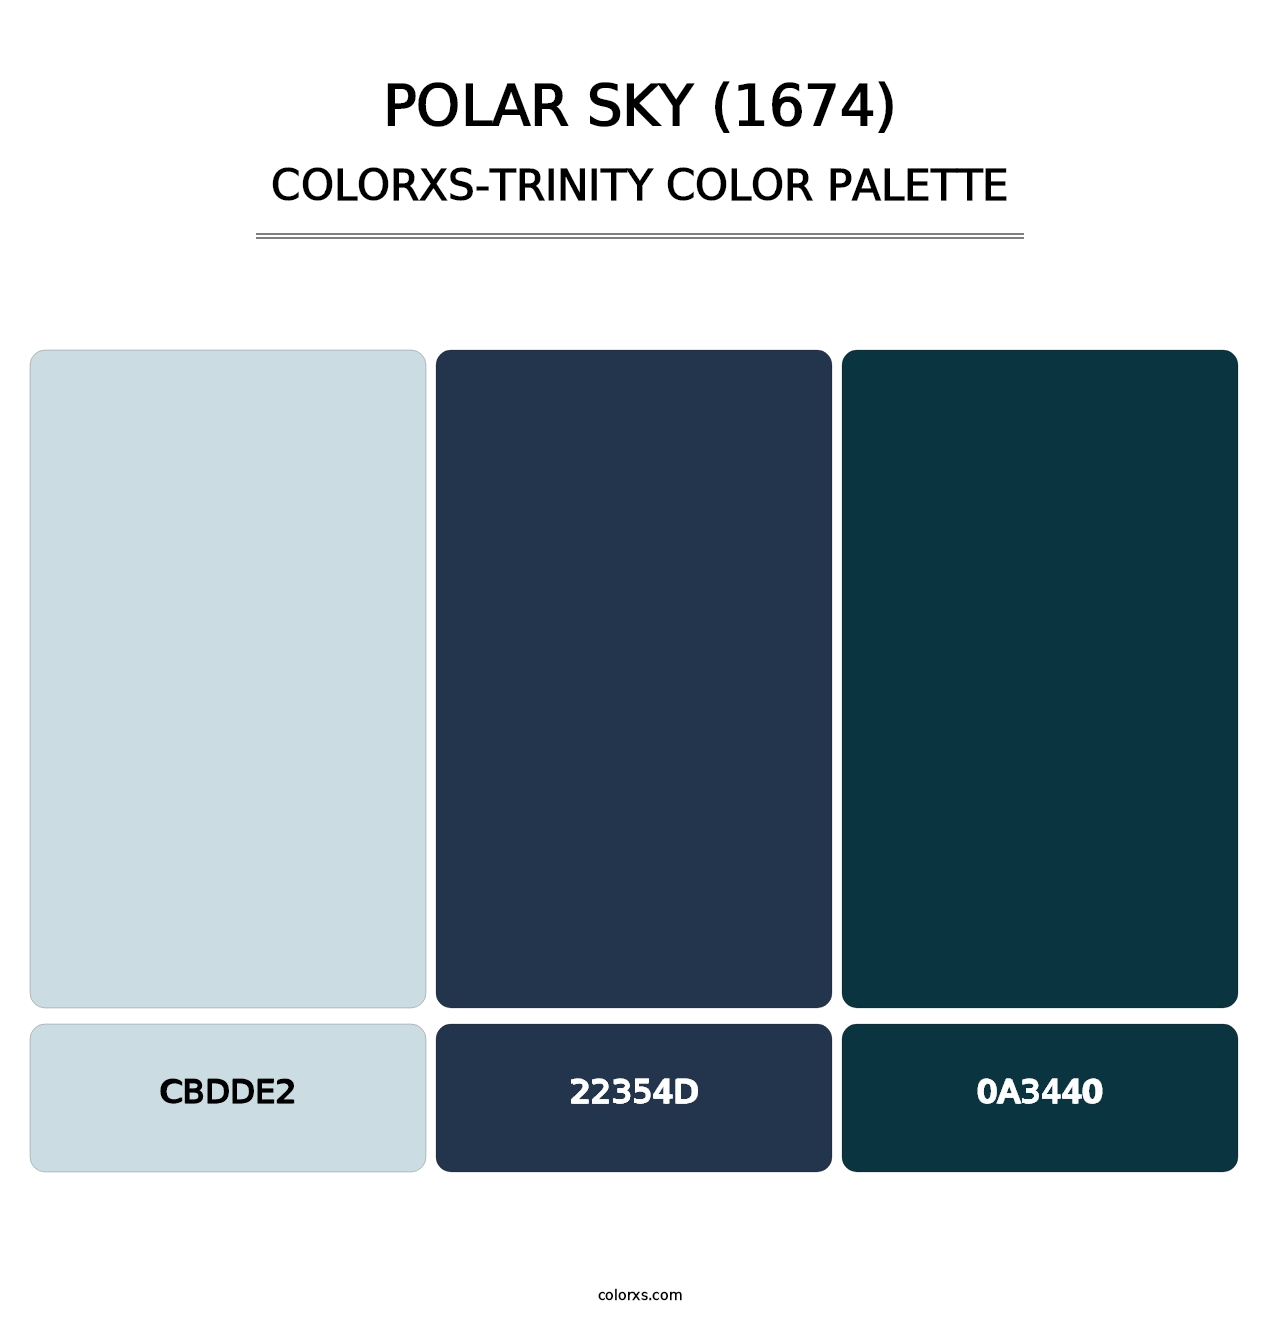 Polar Sky (1674) - Colorxs Trinity Palette